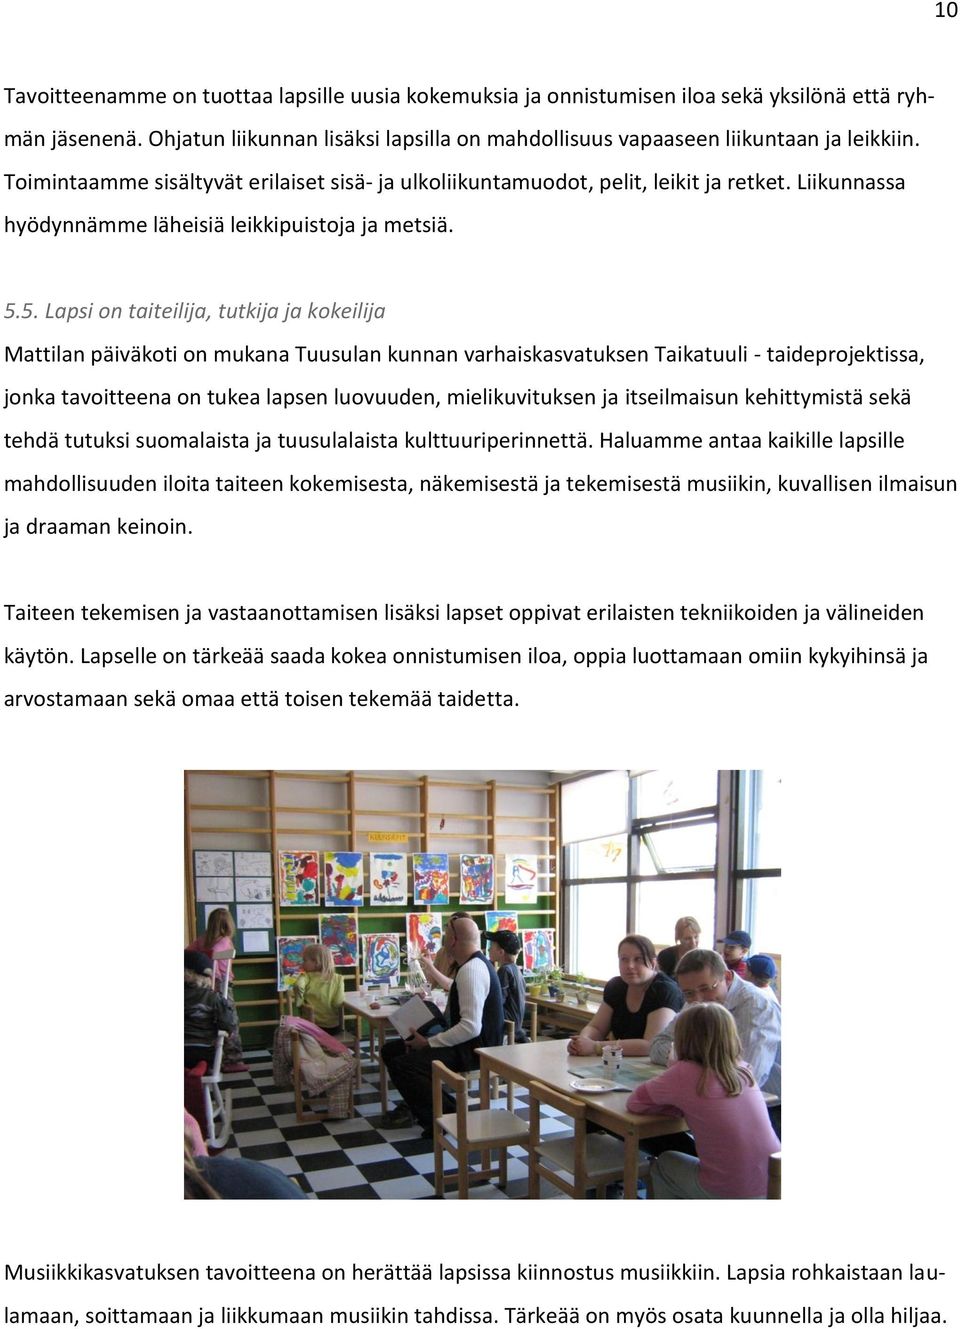 5. Lapsi on taiteilija, tutkija ja kokeilija Mattilan päiväkoti on mukana Tuusulan kunnan varhaiskasvatuksen Taikatuuli - taideprojektissa, jonka tavoitteena on tukea lapsen luovuuden,